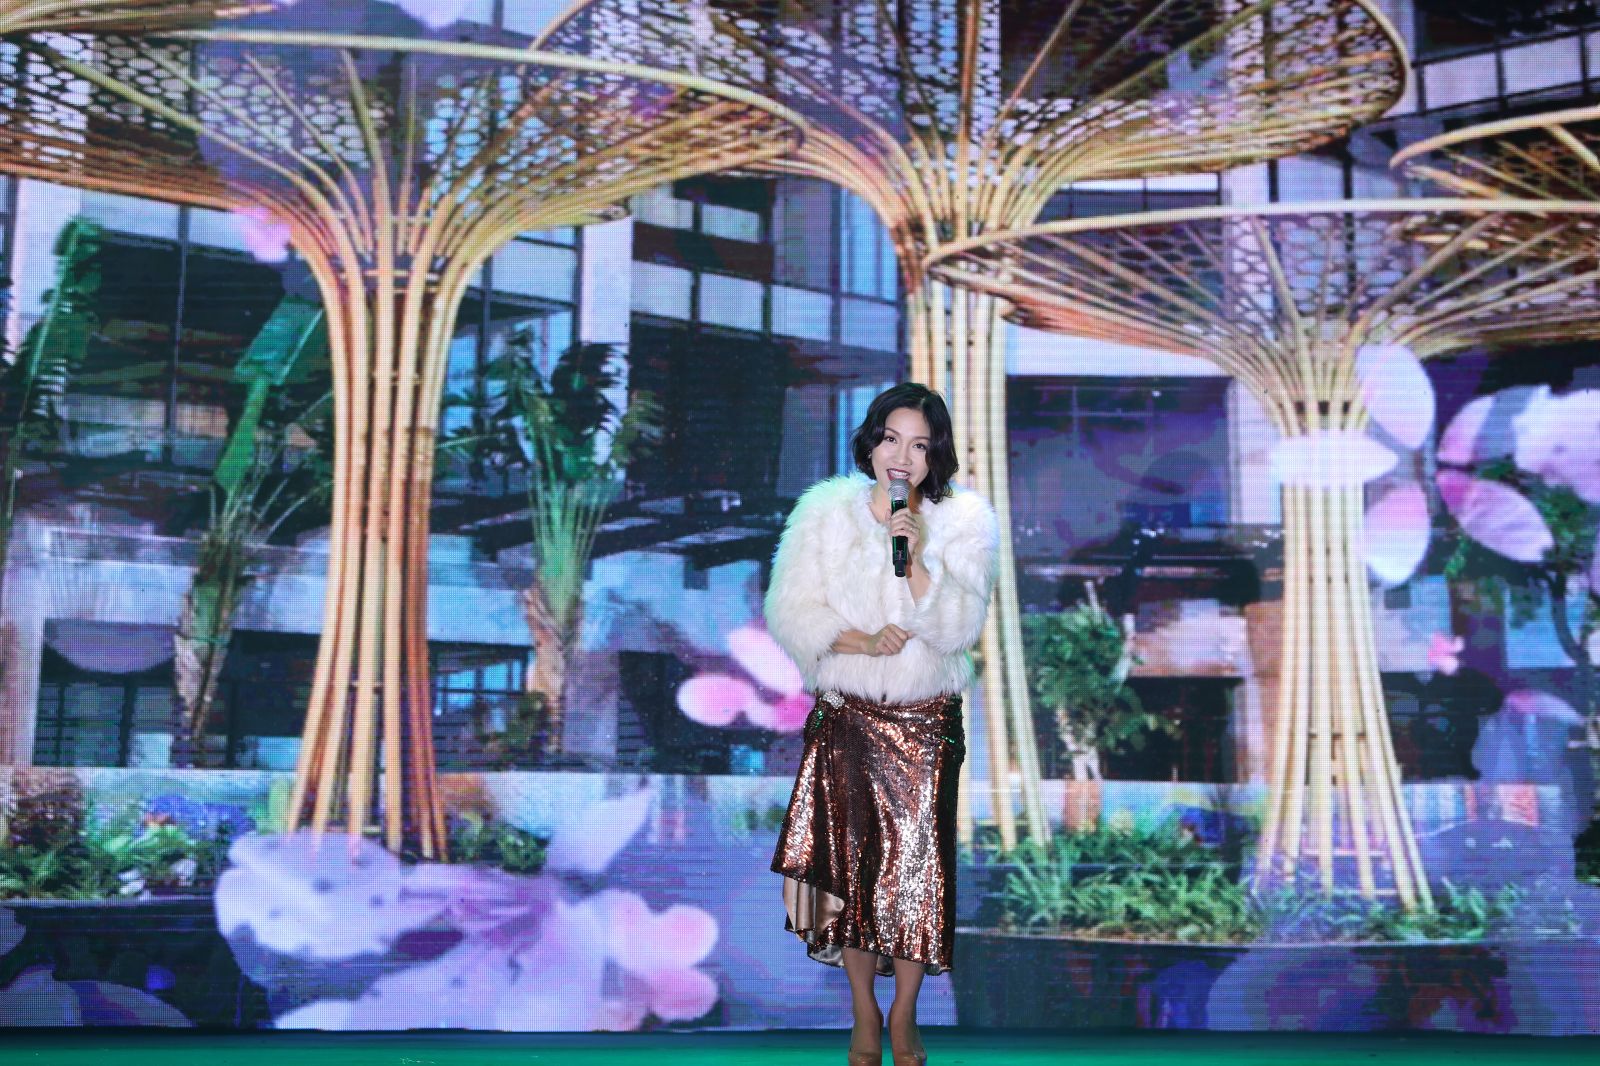 Điểm nhấn của sự kiện là đêm nhạc ý nghĩa với sự quy tụ của nhiều khách mời nổi tiếng như ca sĩ Mỹ Linh.